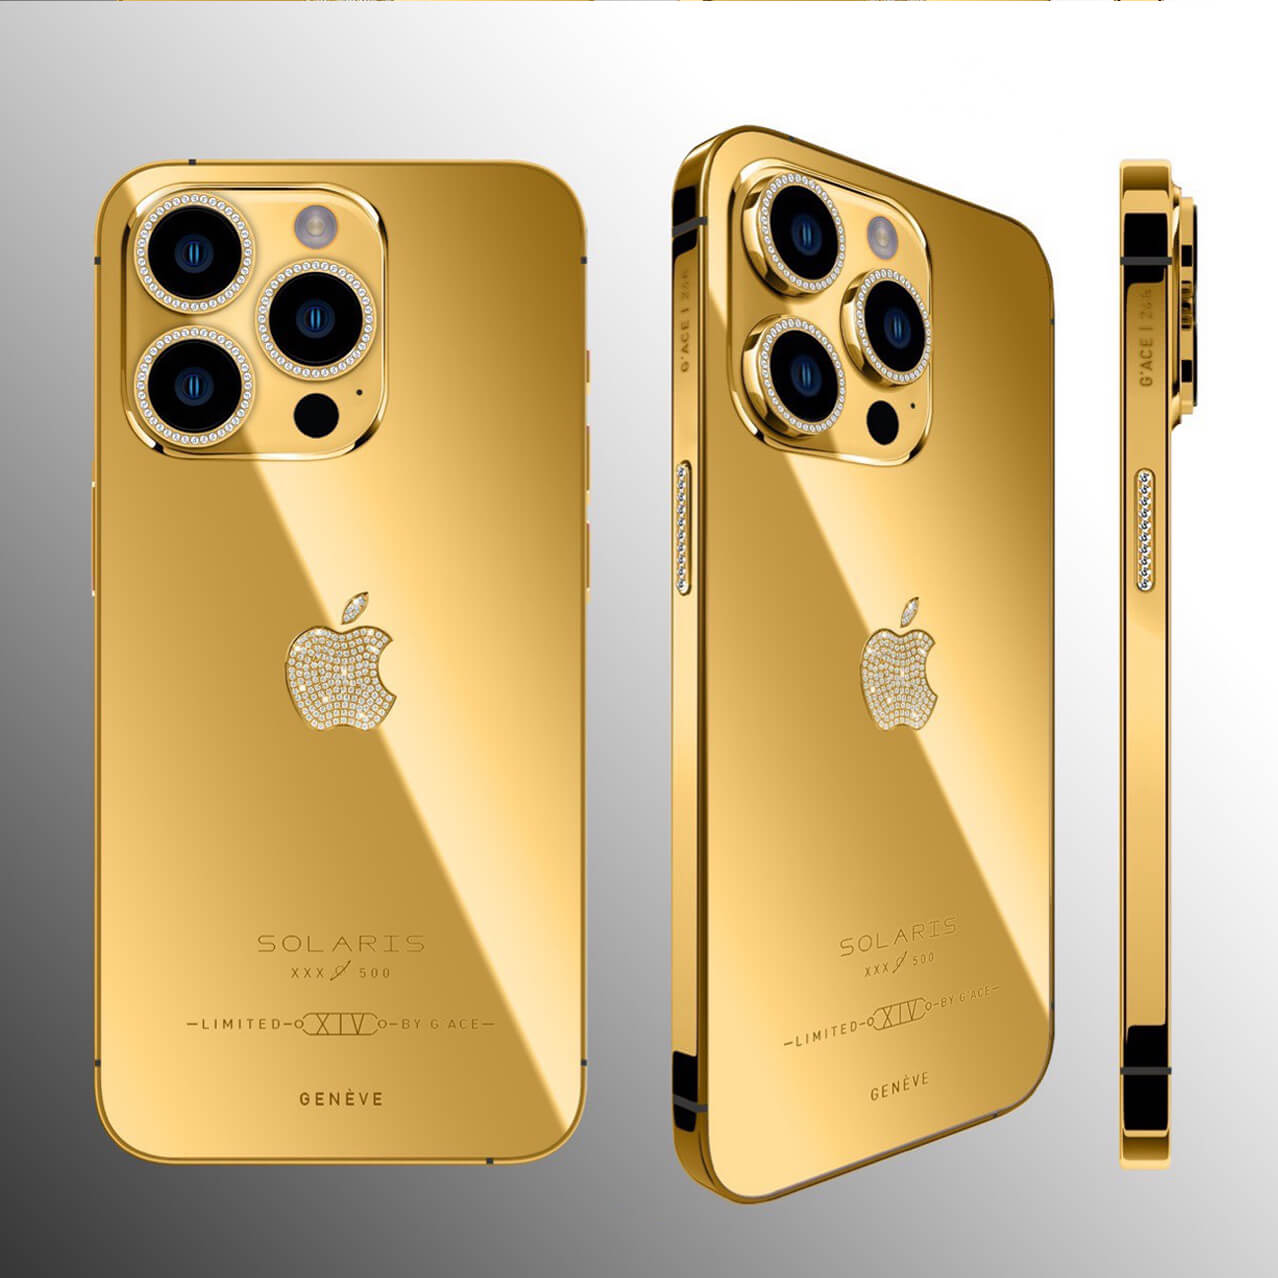 Chiếc iPhone 14 Pro Gold Solaris Limited với màu vàng rực rỡ và thiết kế độc đáo sẽ đem đến cho bạn một trải nghiệm tuyệt vời. Điện thoại này được làm từ những chất liệu cao cấp, đảm bảo chắc chắn, bền bỉ và sẽ gây ấn tượng mạnh với bạn ngay phút đầu tiên.